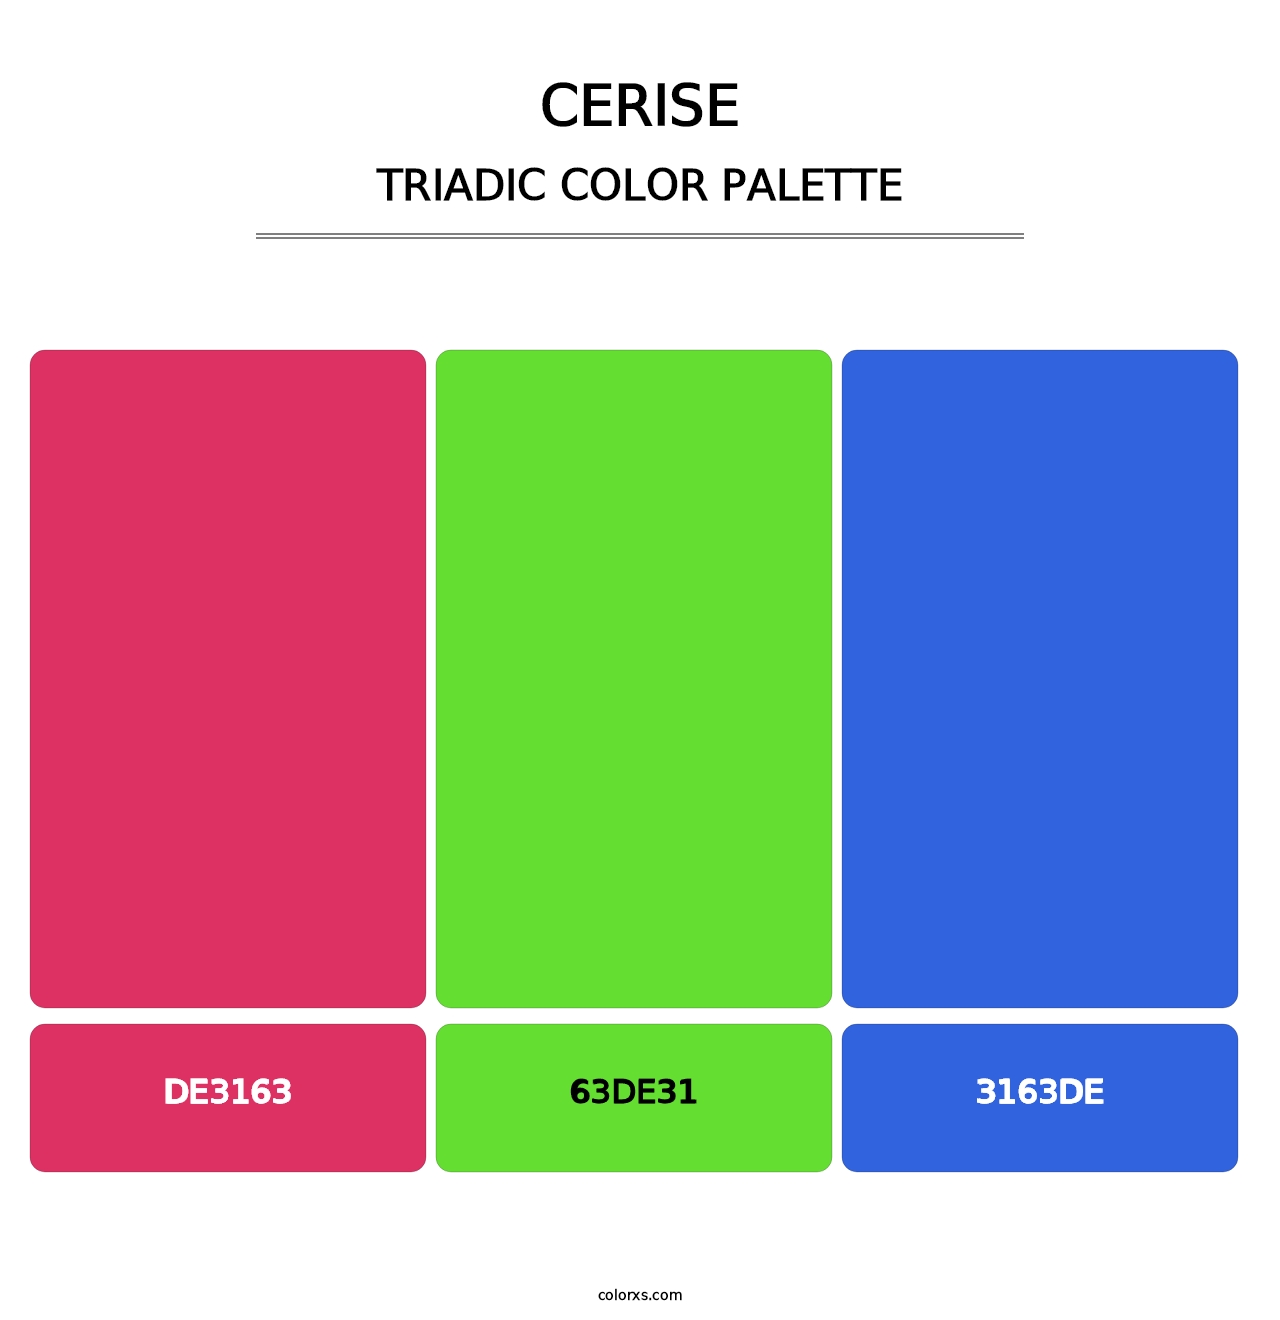 Cerise - Triadic Color Palette